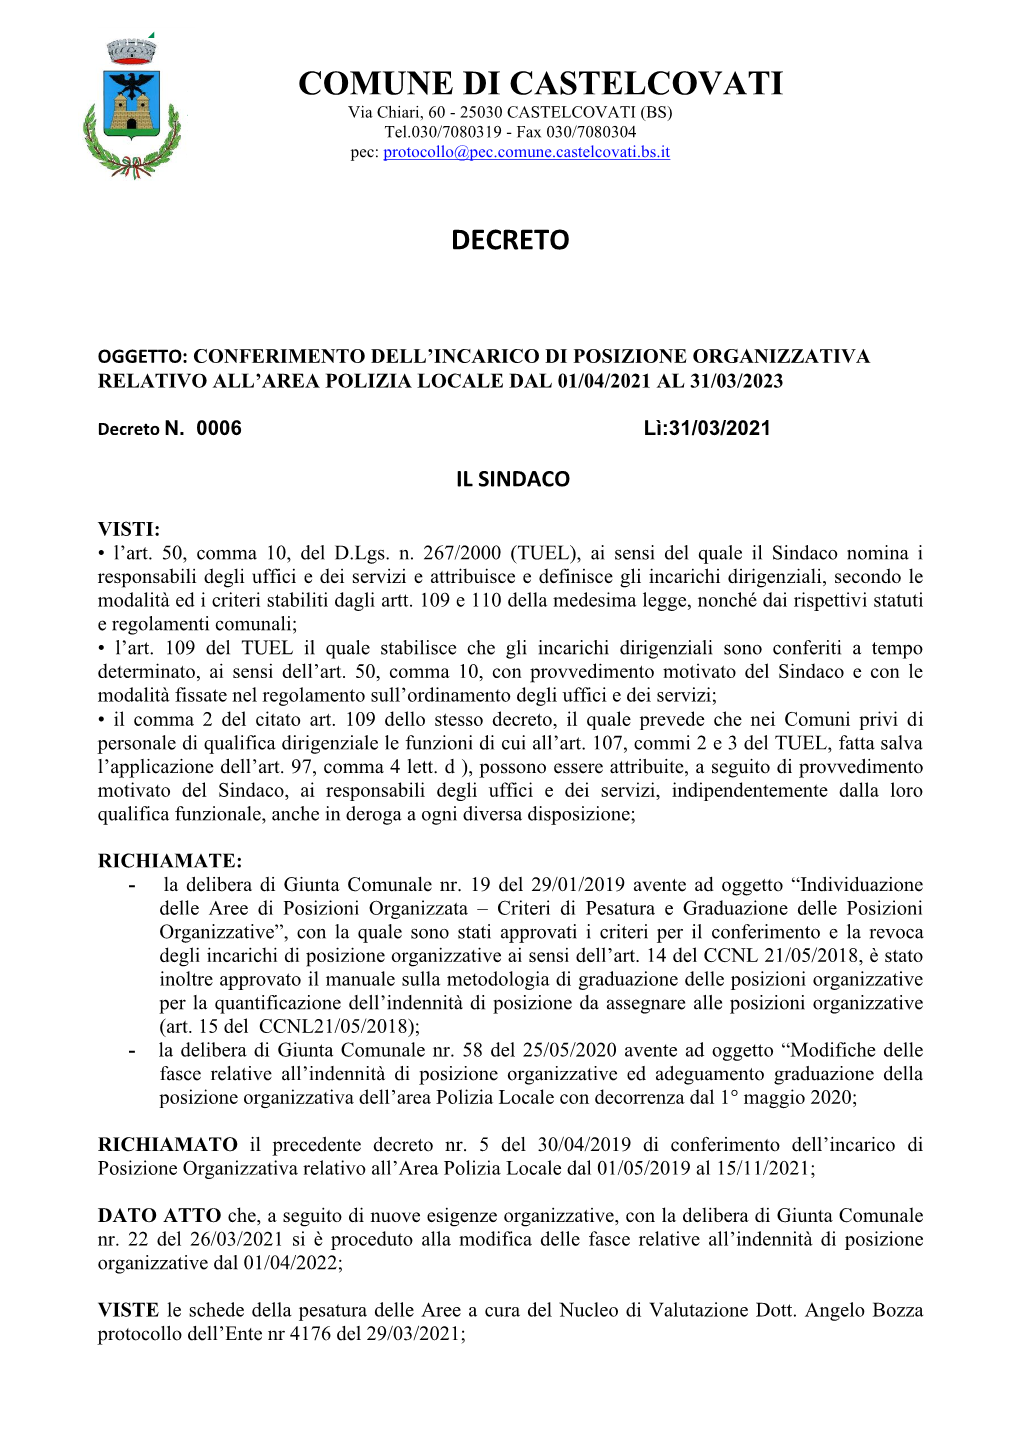 COMUNE DI CASTELCOVATI Via Chiari, 60 - 25030 CASTELCOVATI (BS) Tel.030/7080319 - Fax 030/7080304 Pec: Protocollo@Pec.Comune.Castelcovati.Bs.It